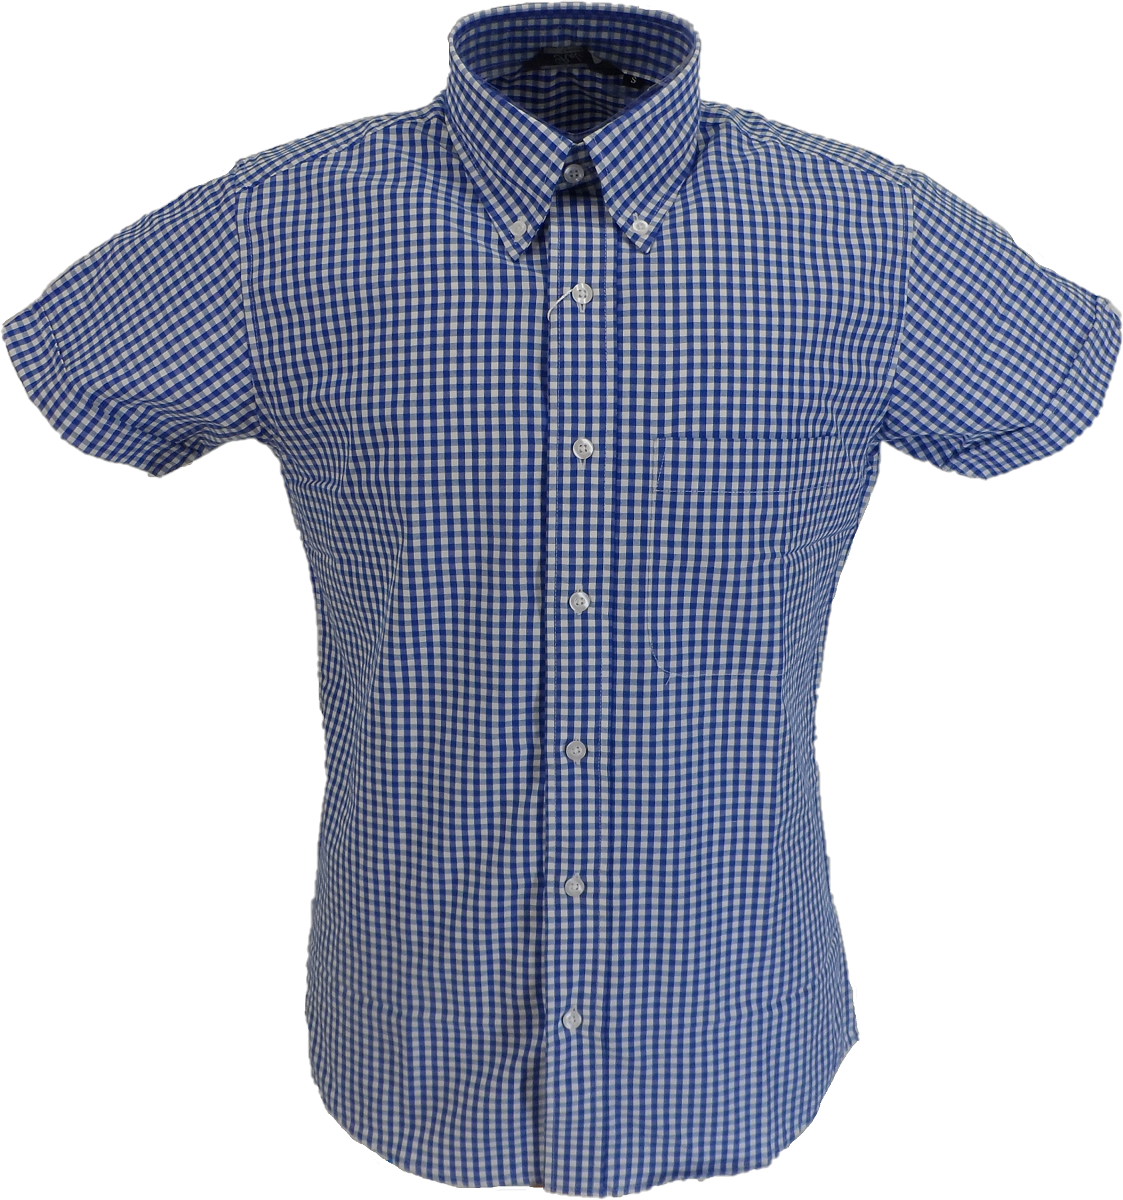 Relco kurzärmelige Button-Down-Hemden mit hohem Baumwollanteil und blauem Gingham-Karomuster